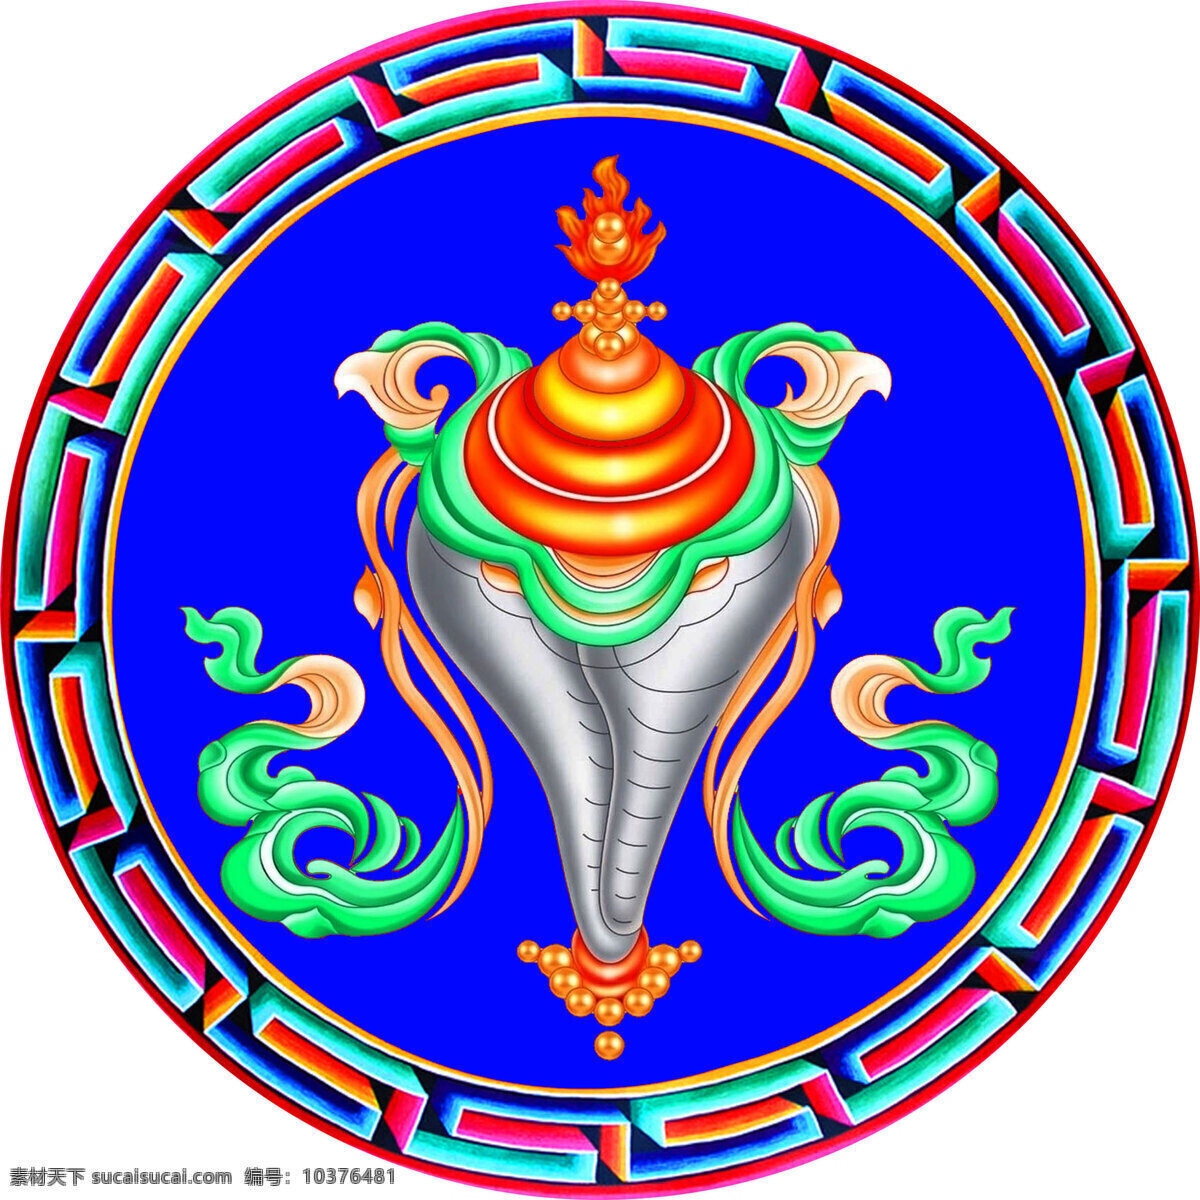 八宝 海螺 花边 吉祥八宝 图案 文化艺术 西藏 藏八宝 宗教信仰